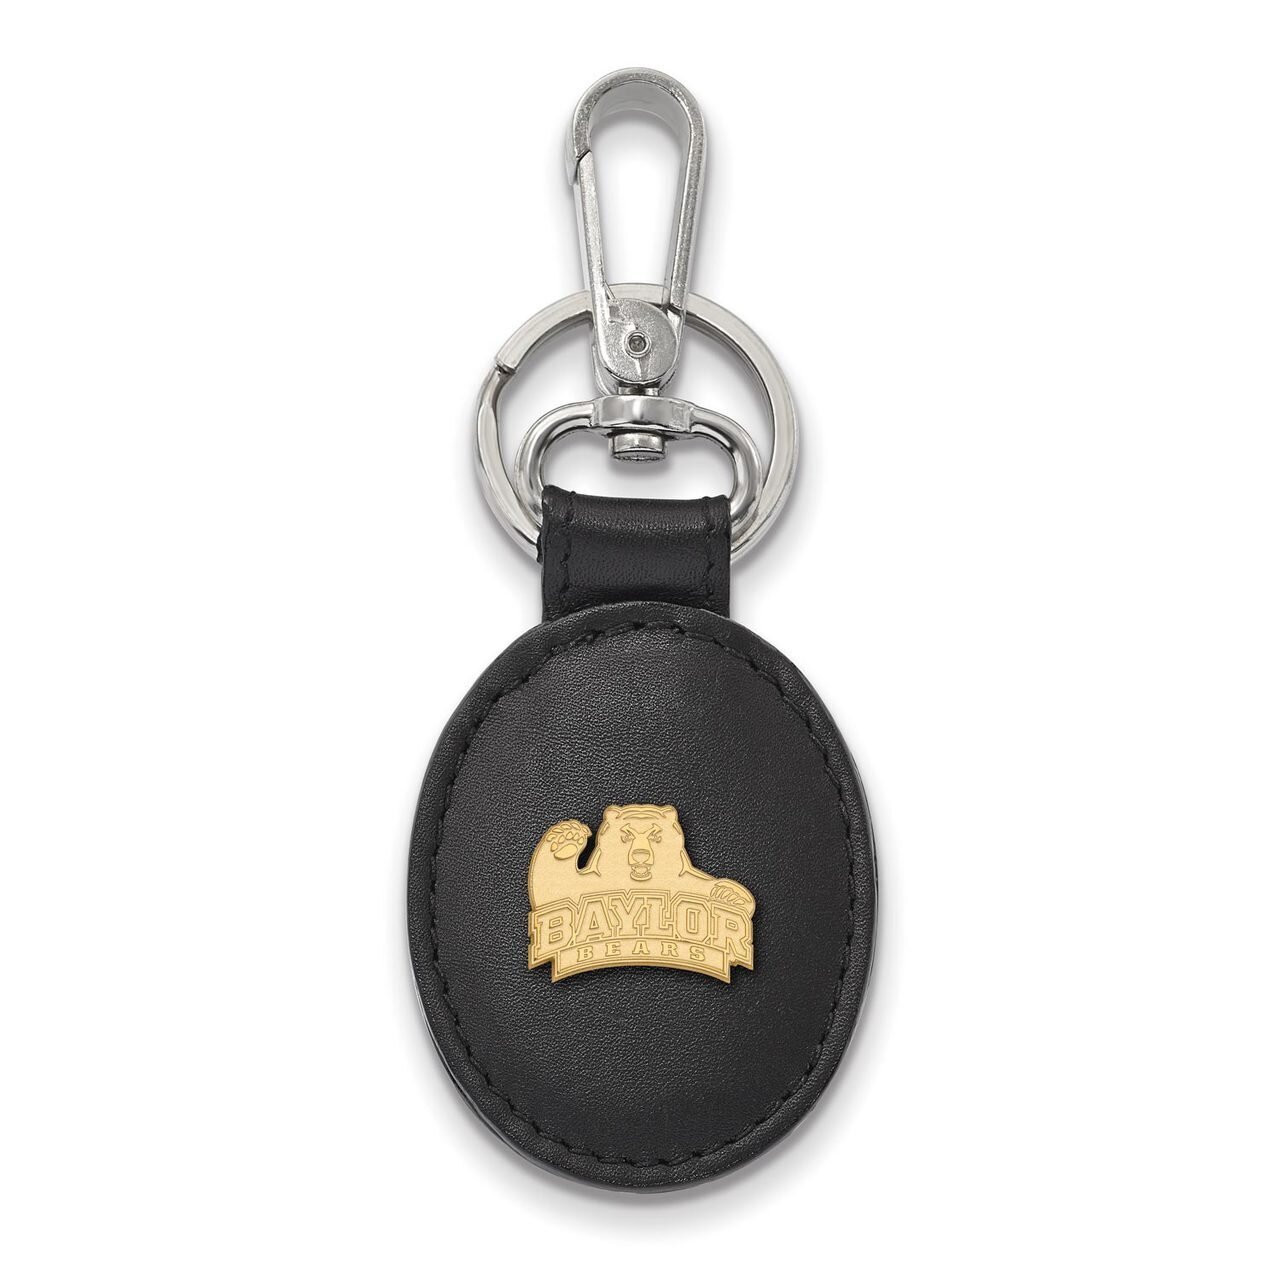 Baylor University Black Leather Oval Key Chain Gold-plated Silver GP012BU-K1